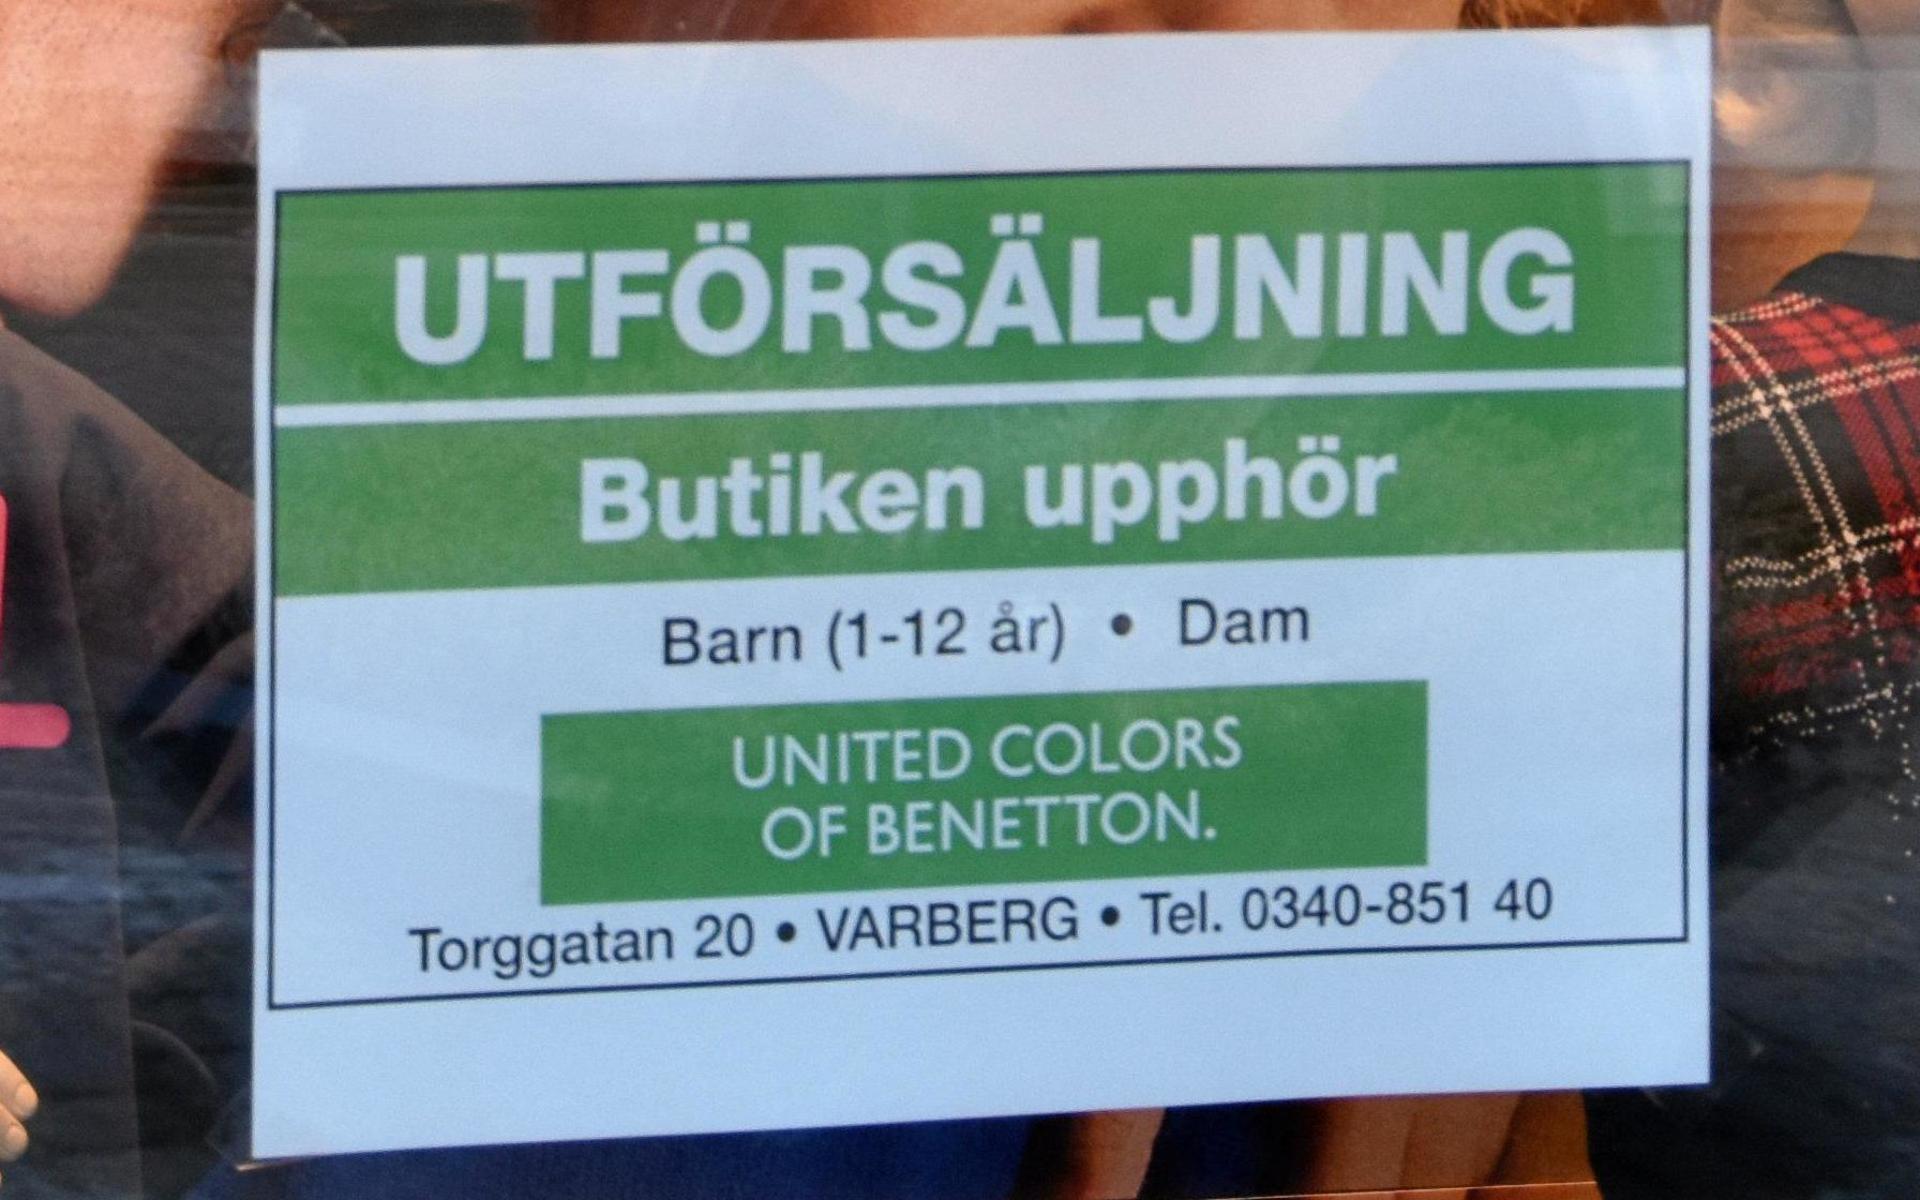 United colors of Benetton på Torggatan 20 stänger efter 25 år på samma adress. En utförsäljning pågår.